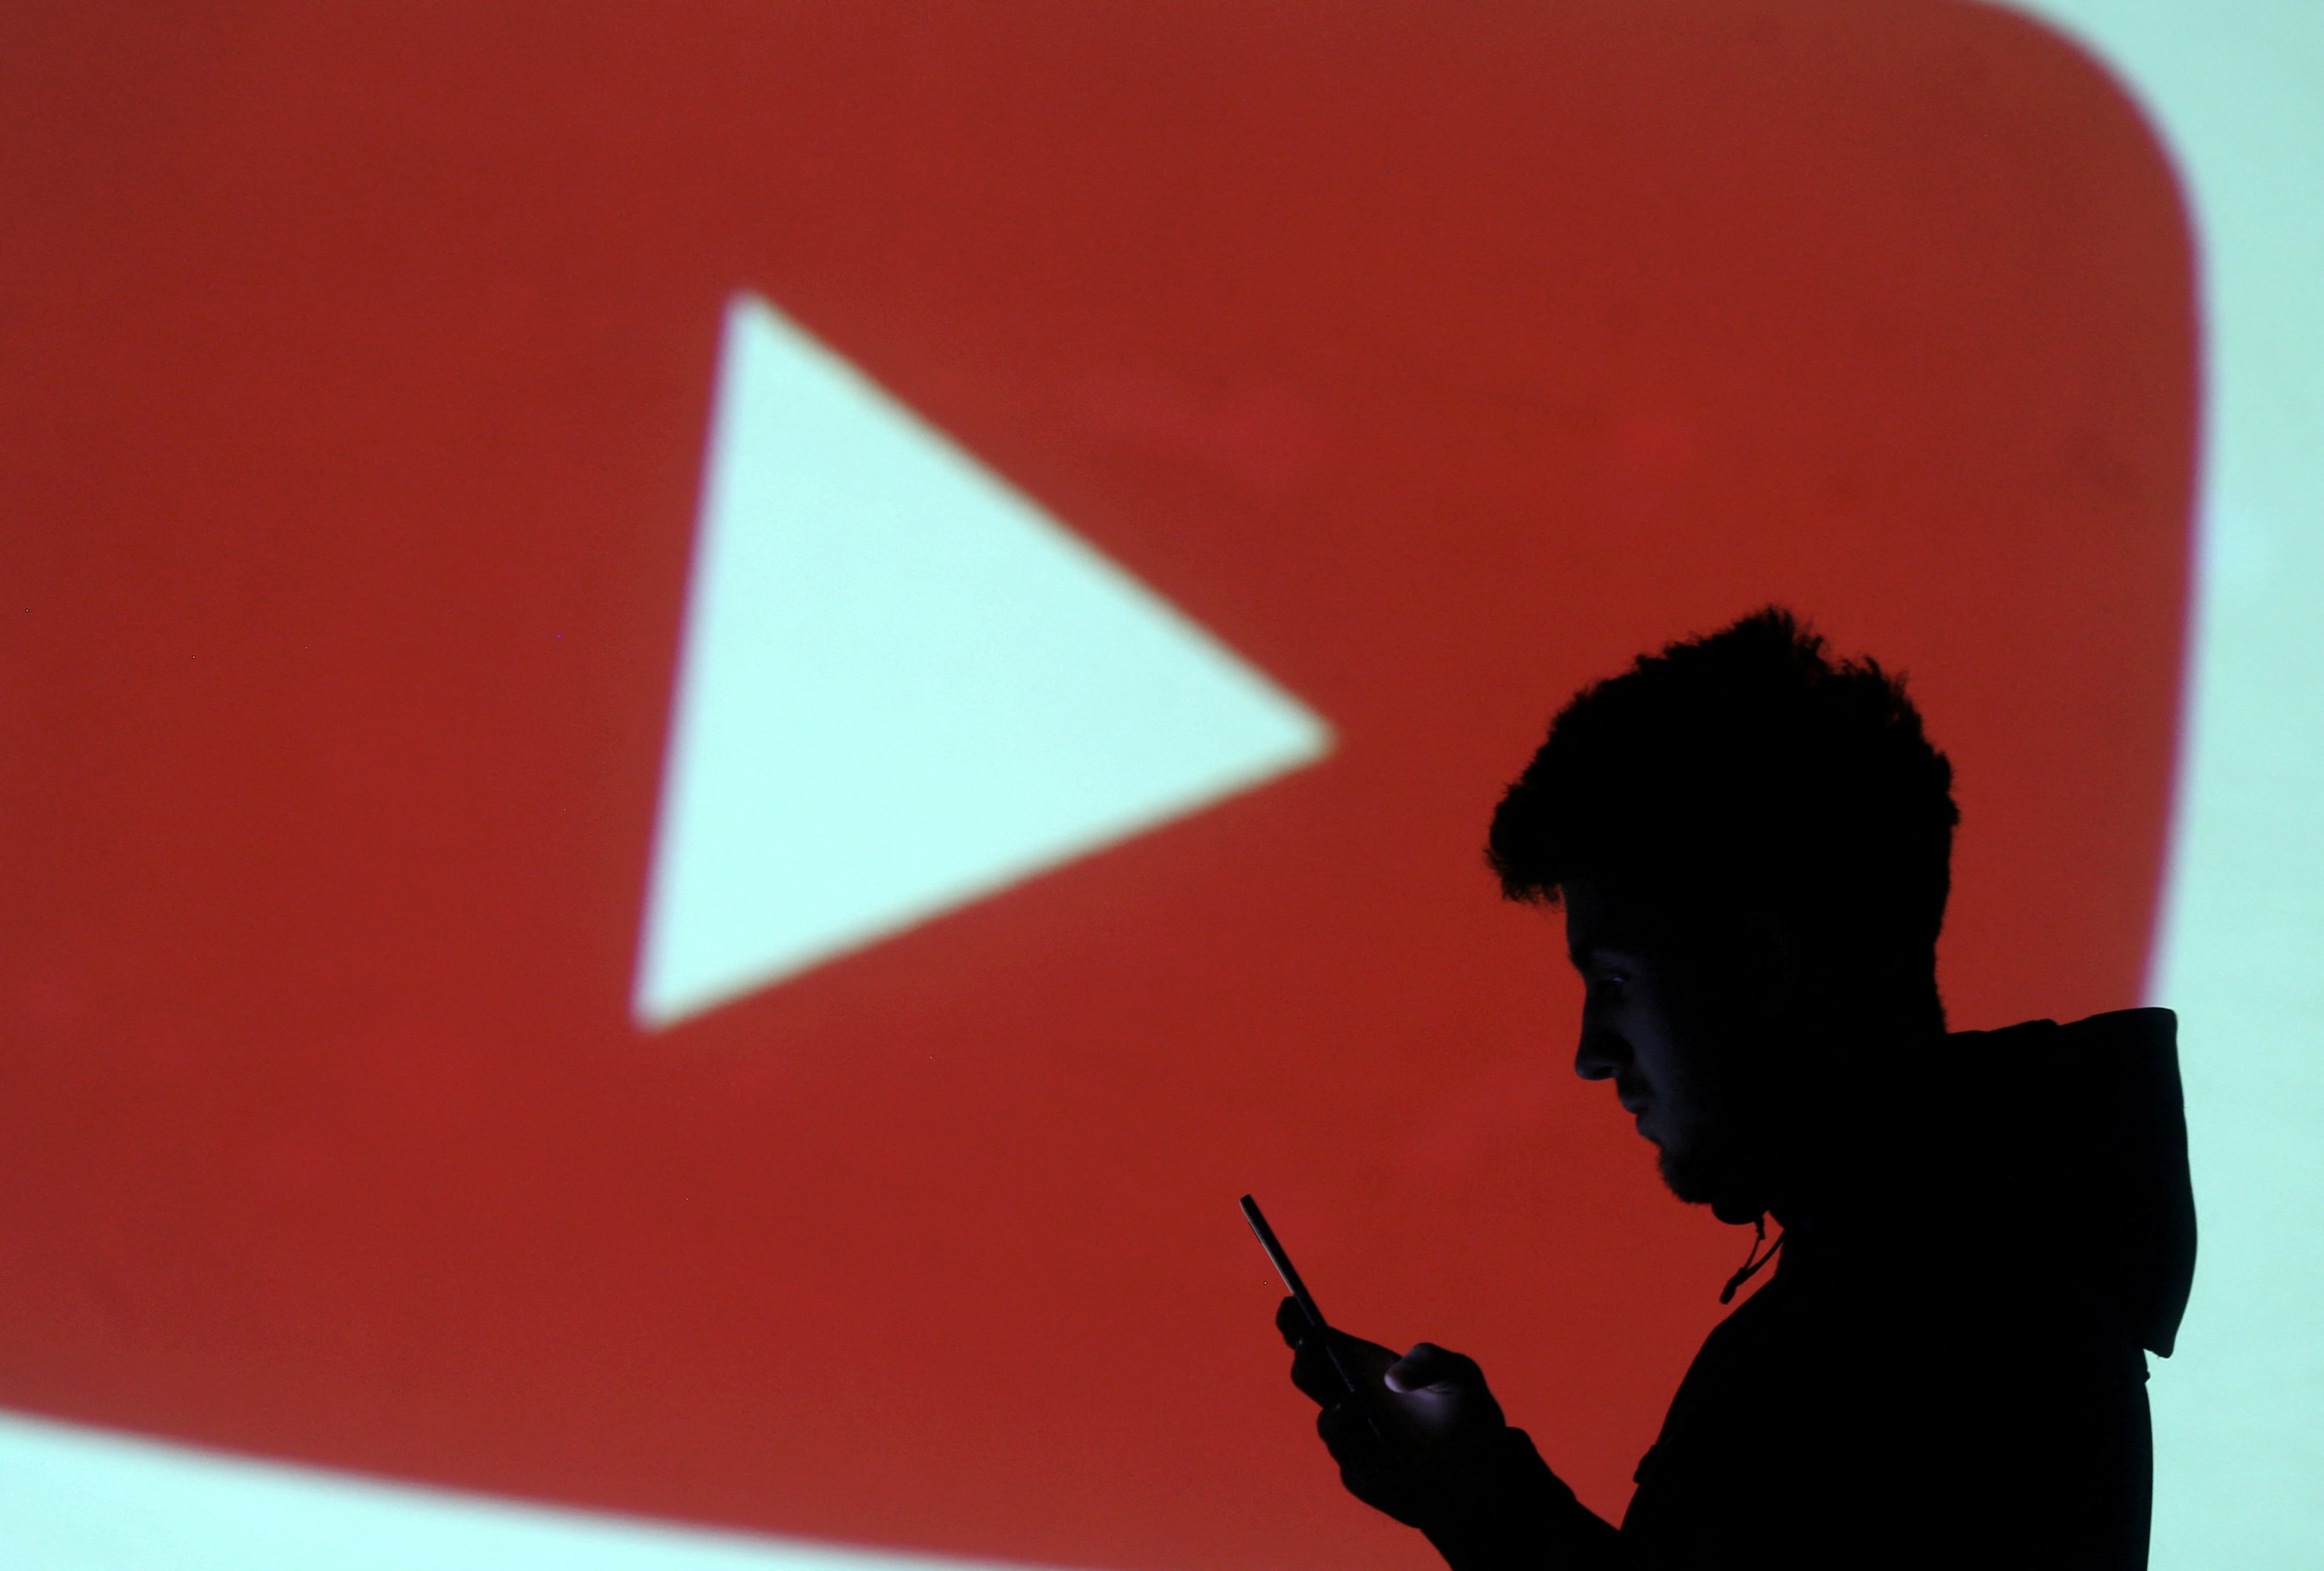 Para escuchar música sin conexión a internet es obligatorio tener la suscripción de YouTube Premium. (REUTERS/Dado Ruvic/Illustration/File Photo)